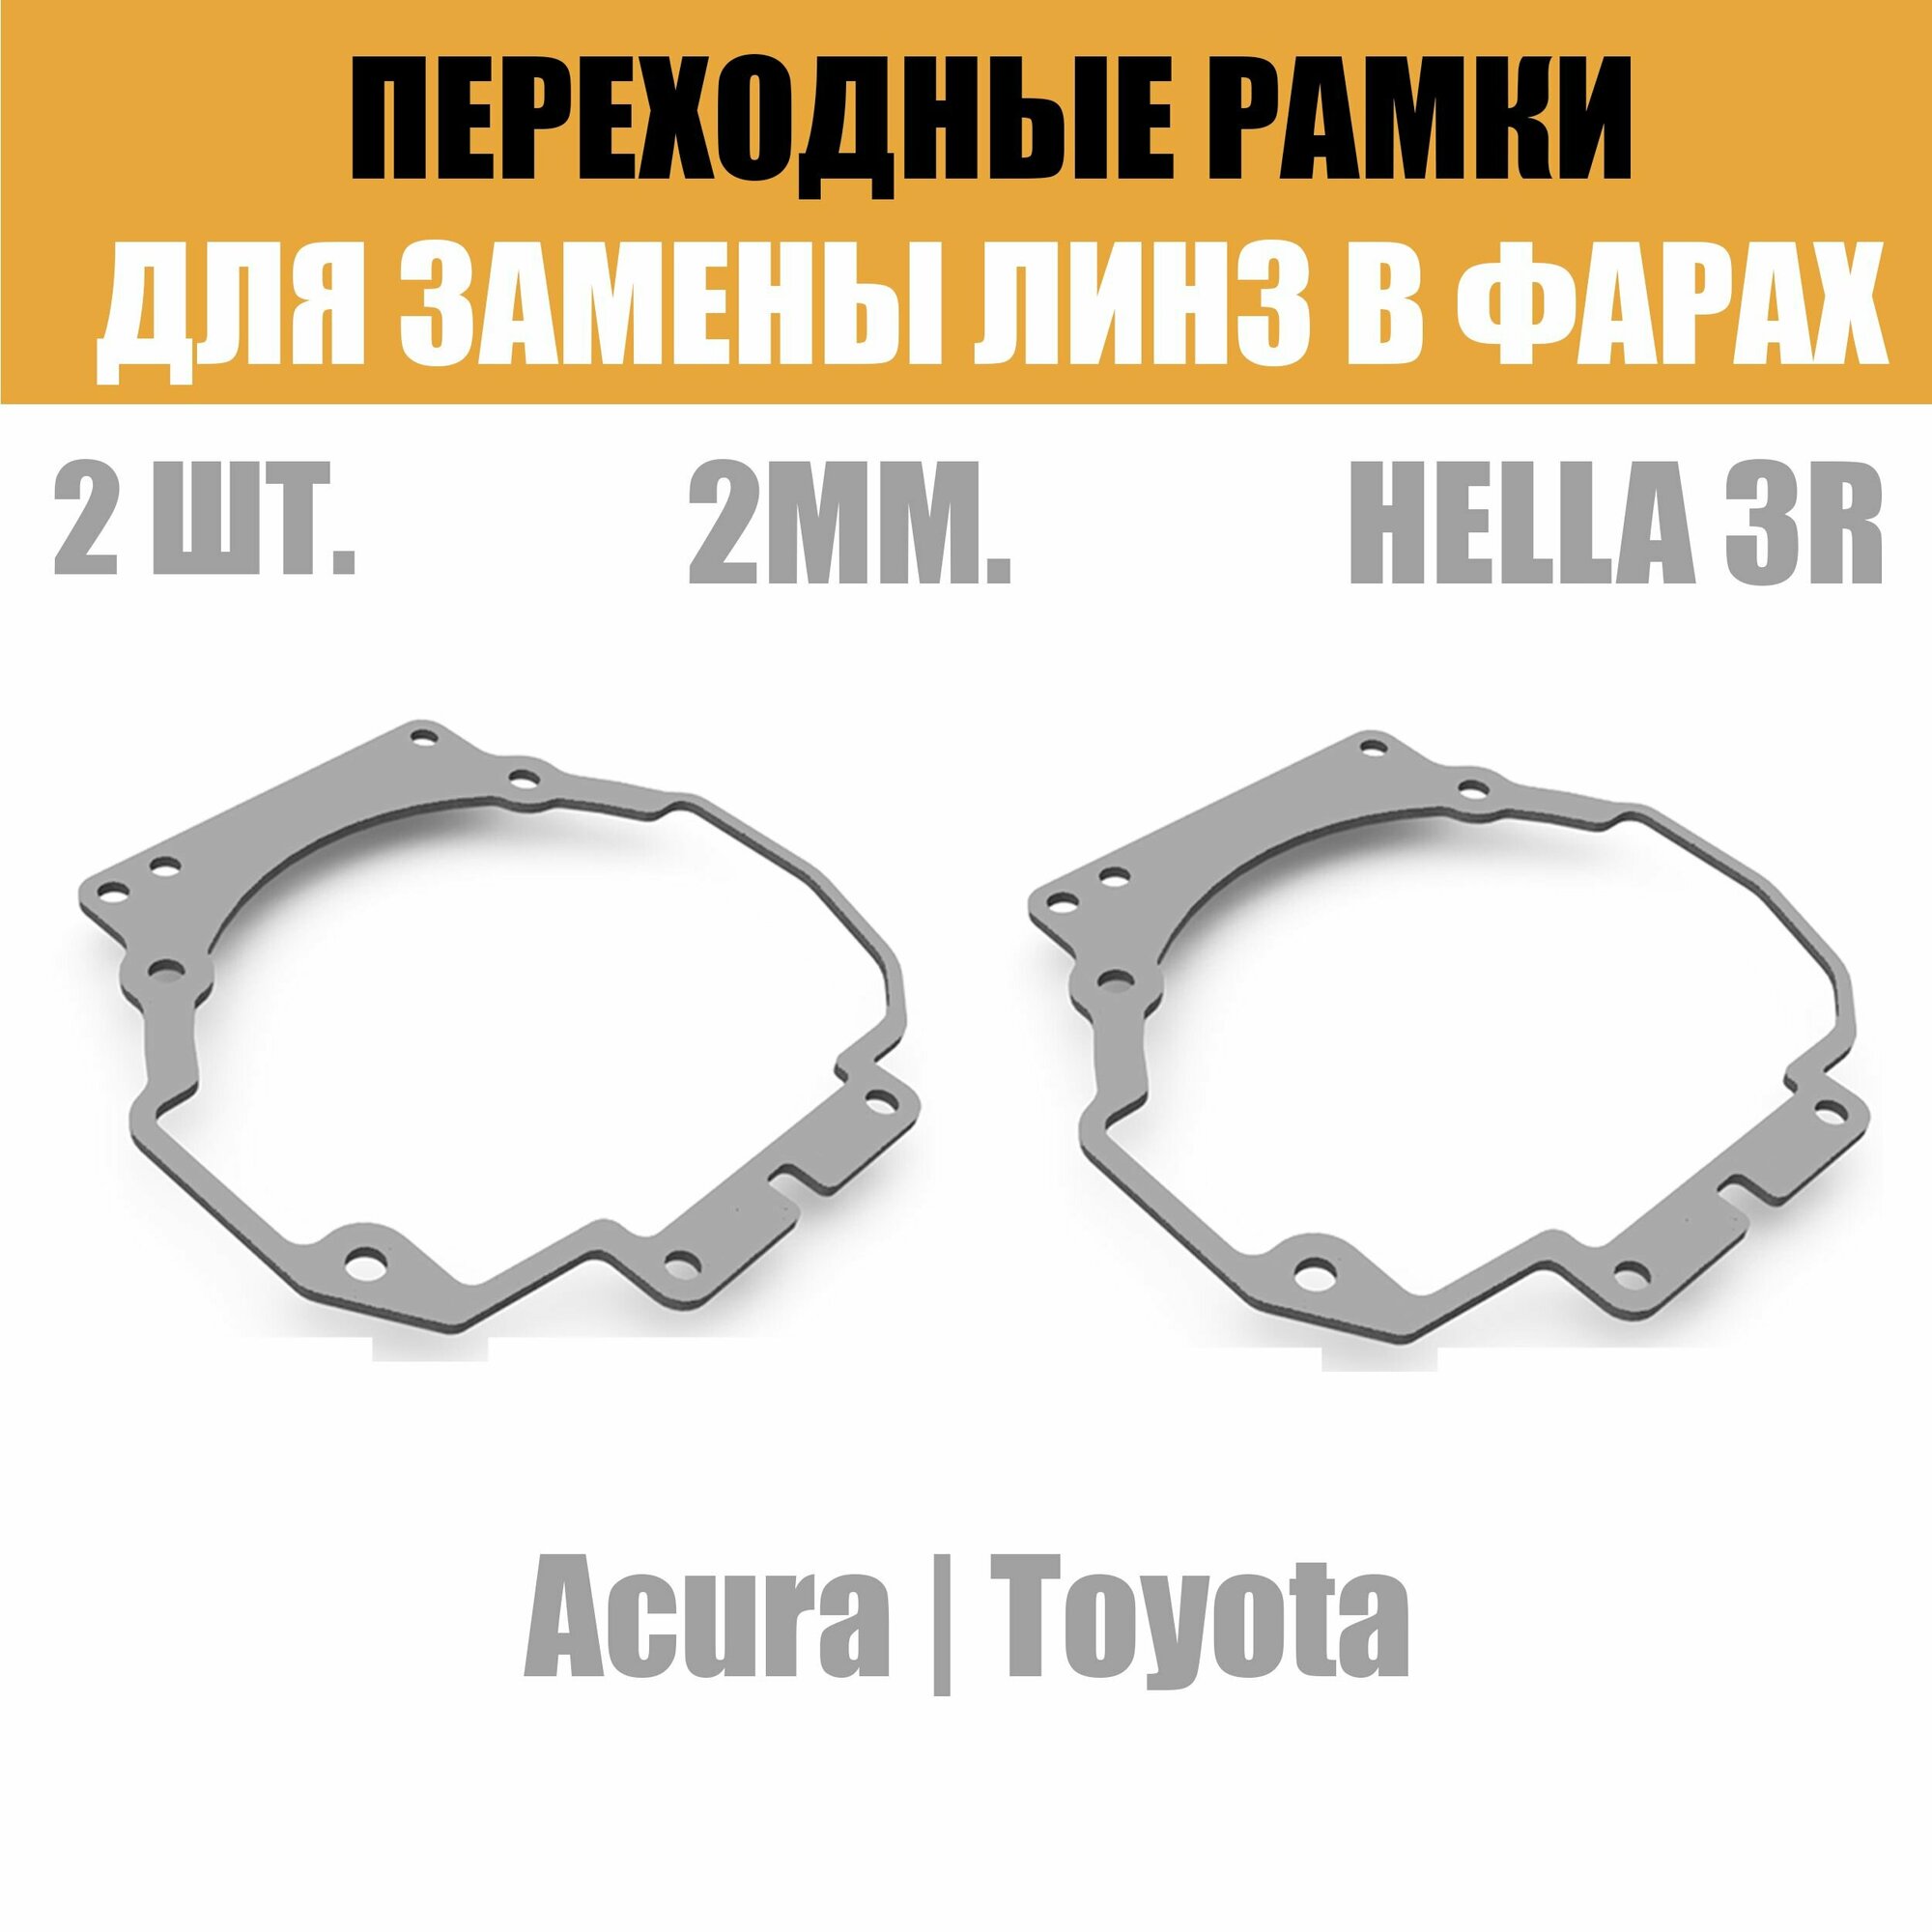 Переходные рамки для линз №34 на Toyota Camry v40 2006-2009/ Acura MDX (2006 - 2013) под модуль Hella 3R/Hella 3 (Комплект 2шт)